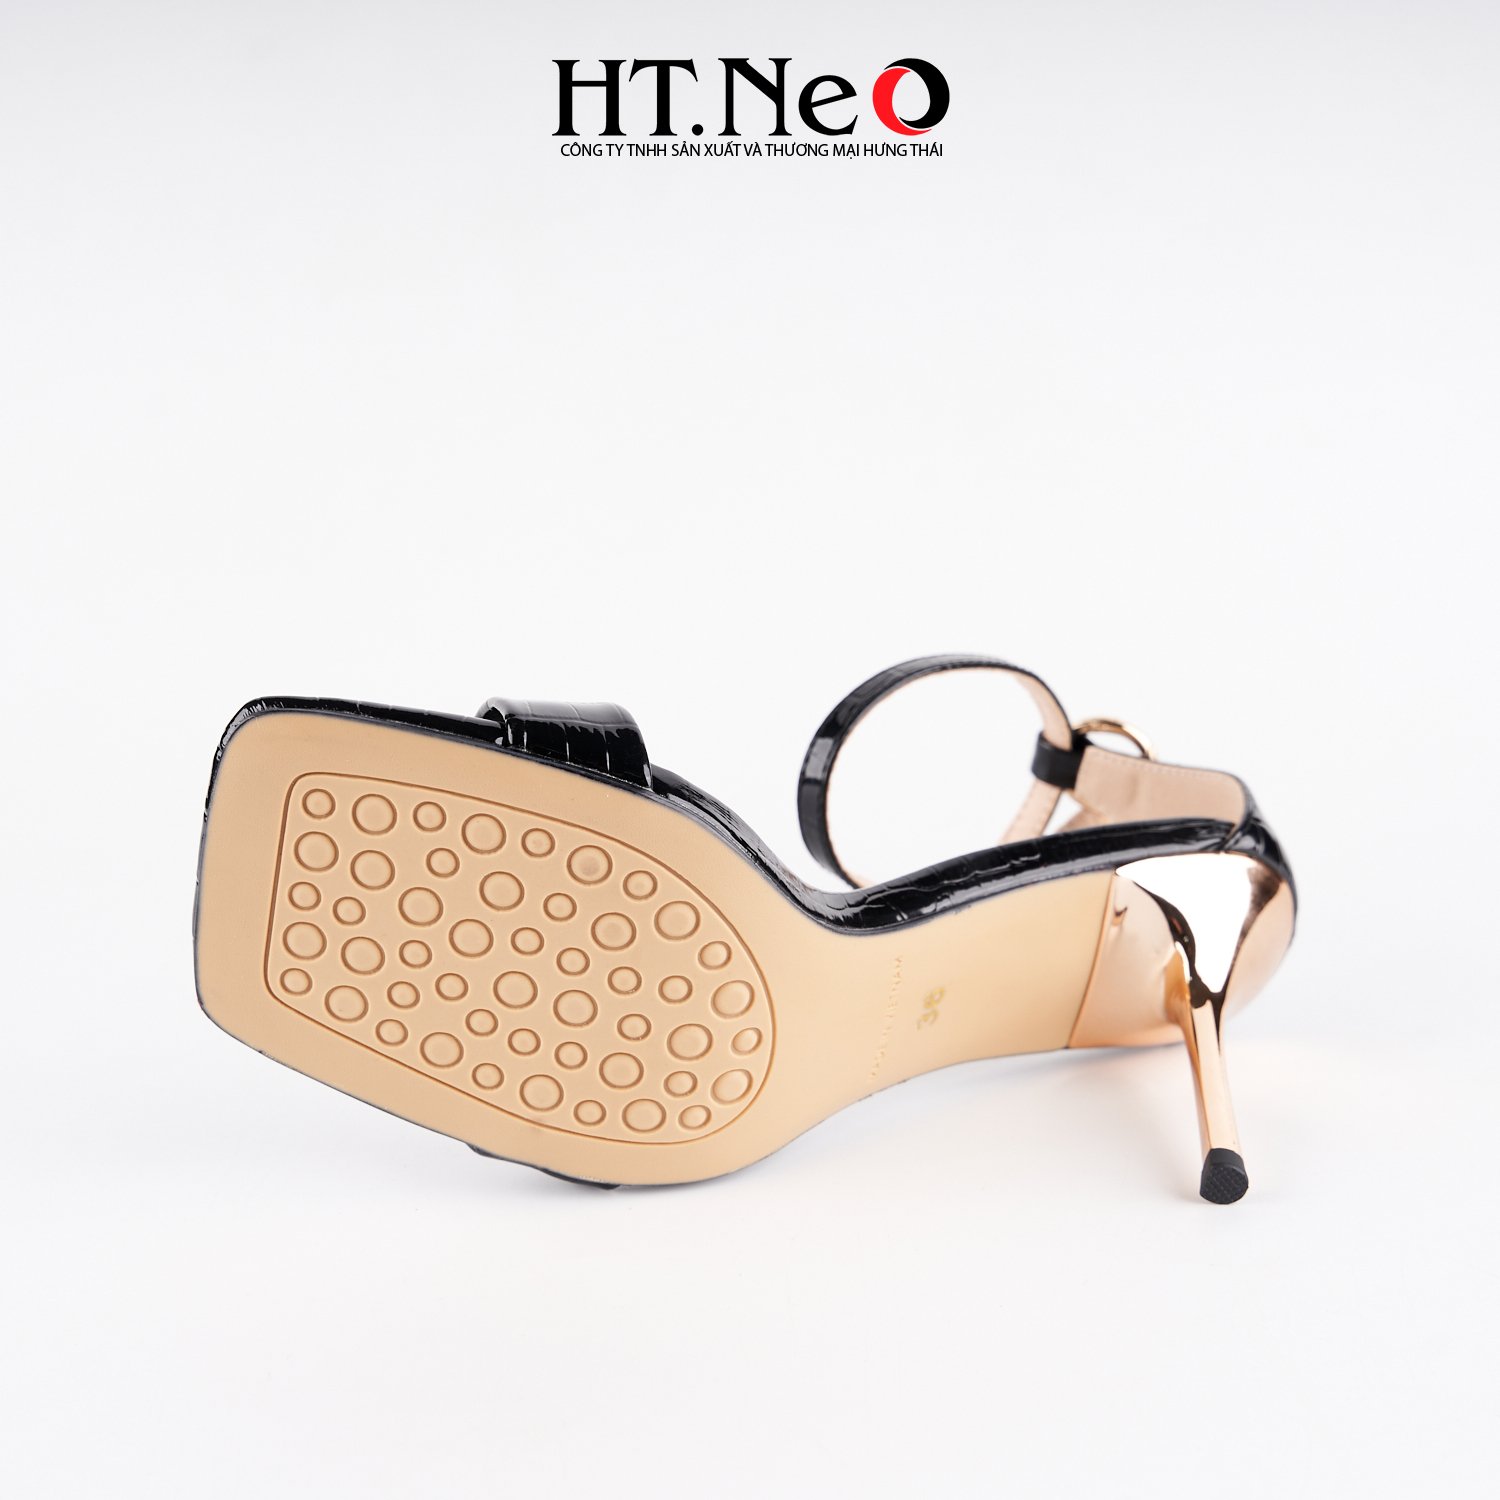 Sandal nữ da HT.NEO thiết kế đơn giản, sang trọng, trẻ trung, dễ phối đồ, tôn dáng SDN165